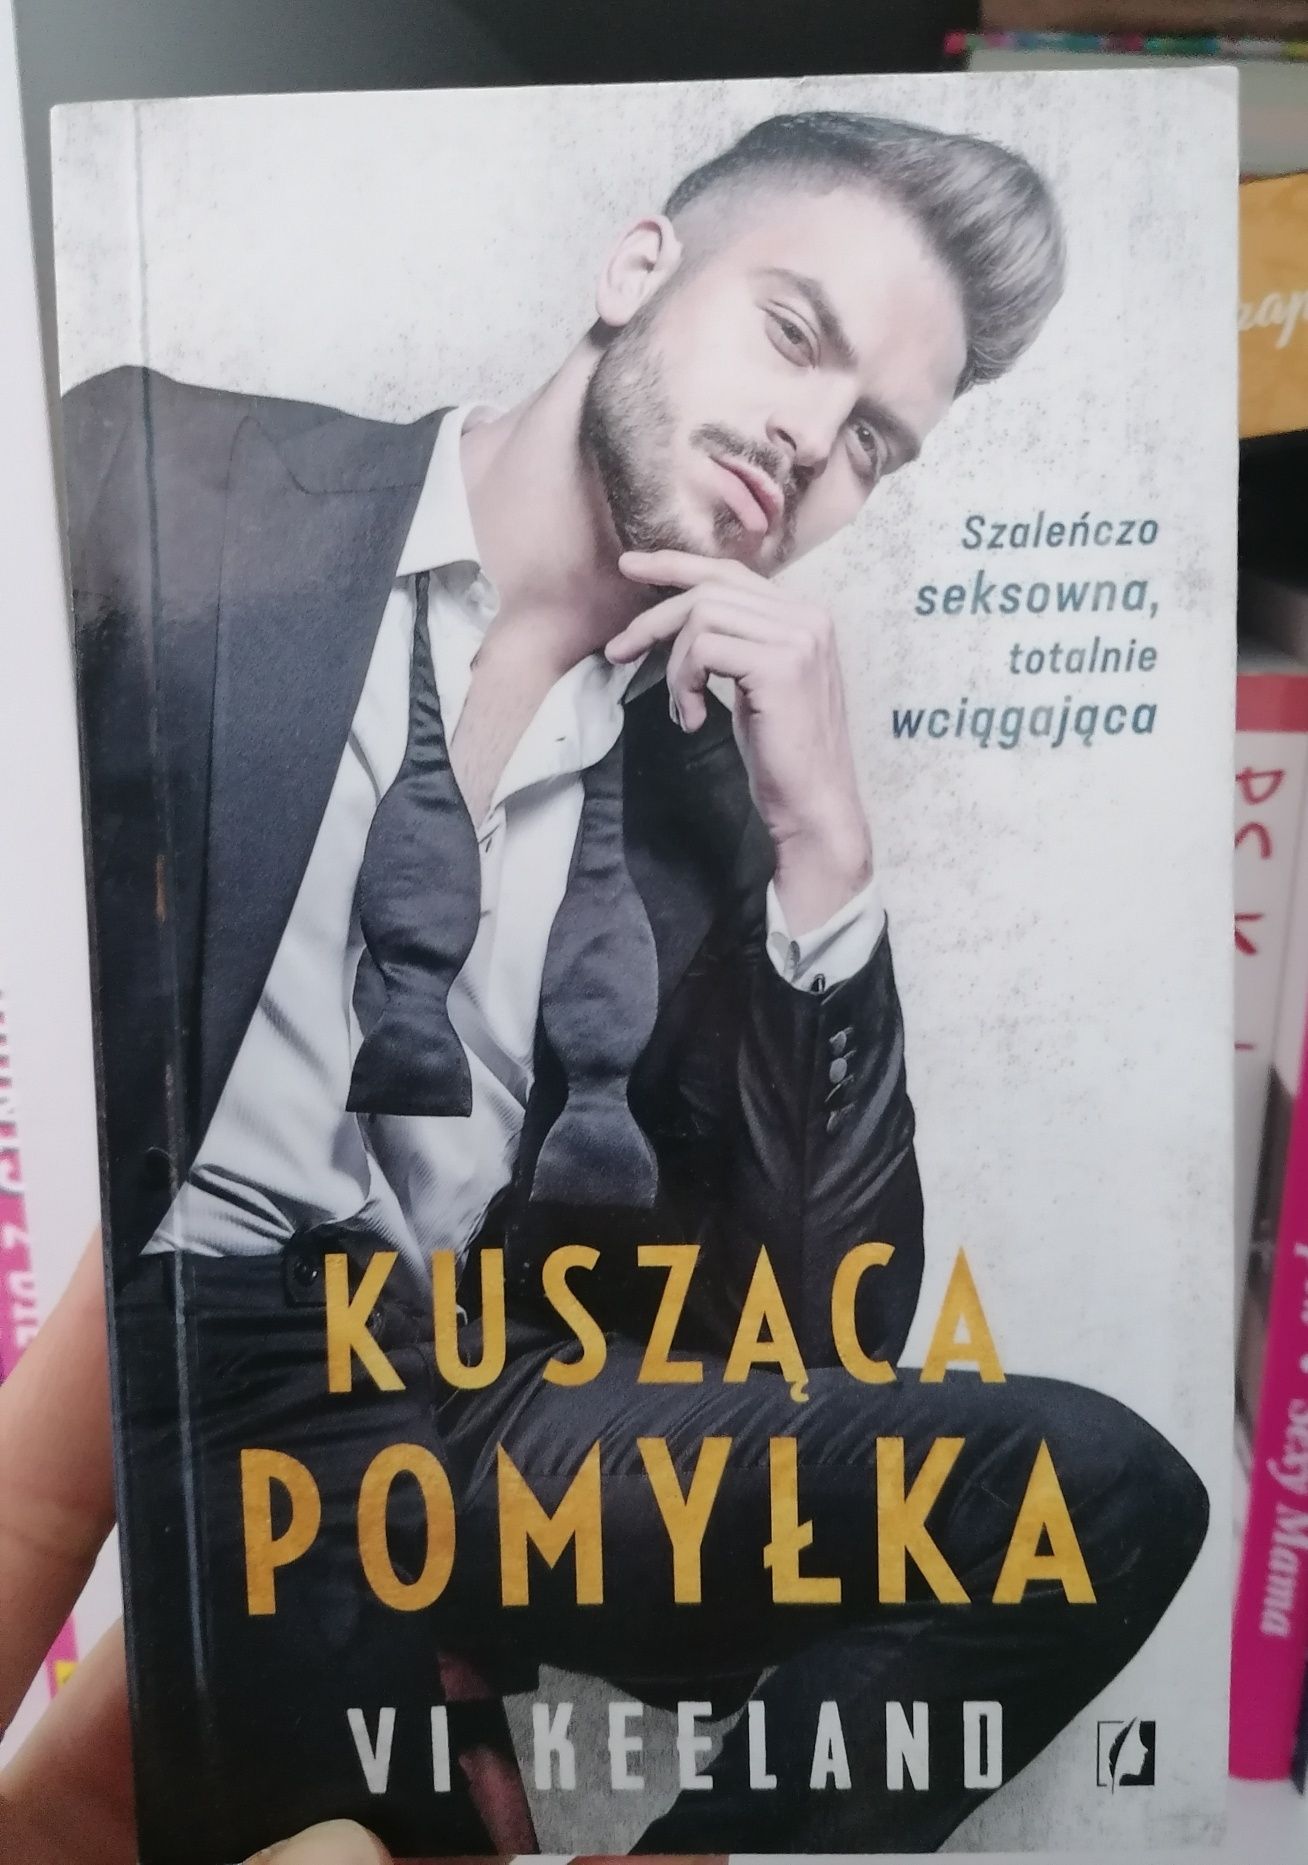 Książka - Kusząca pomyłka
Vi keeland
Romans profesora z asystentką aka